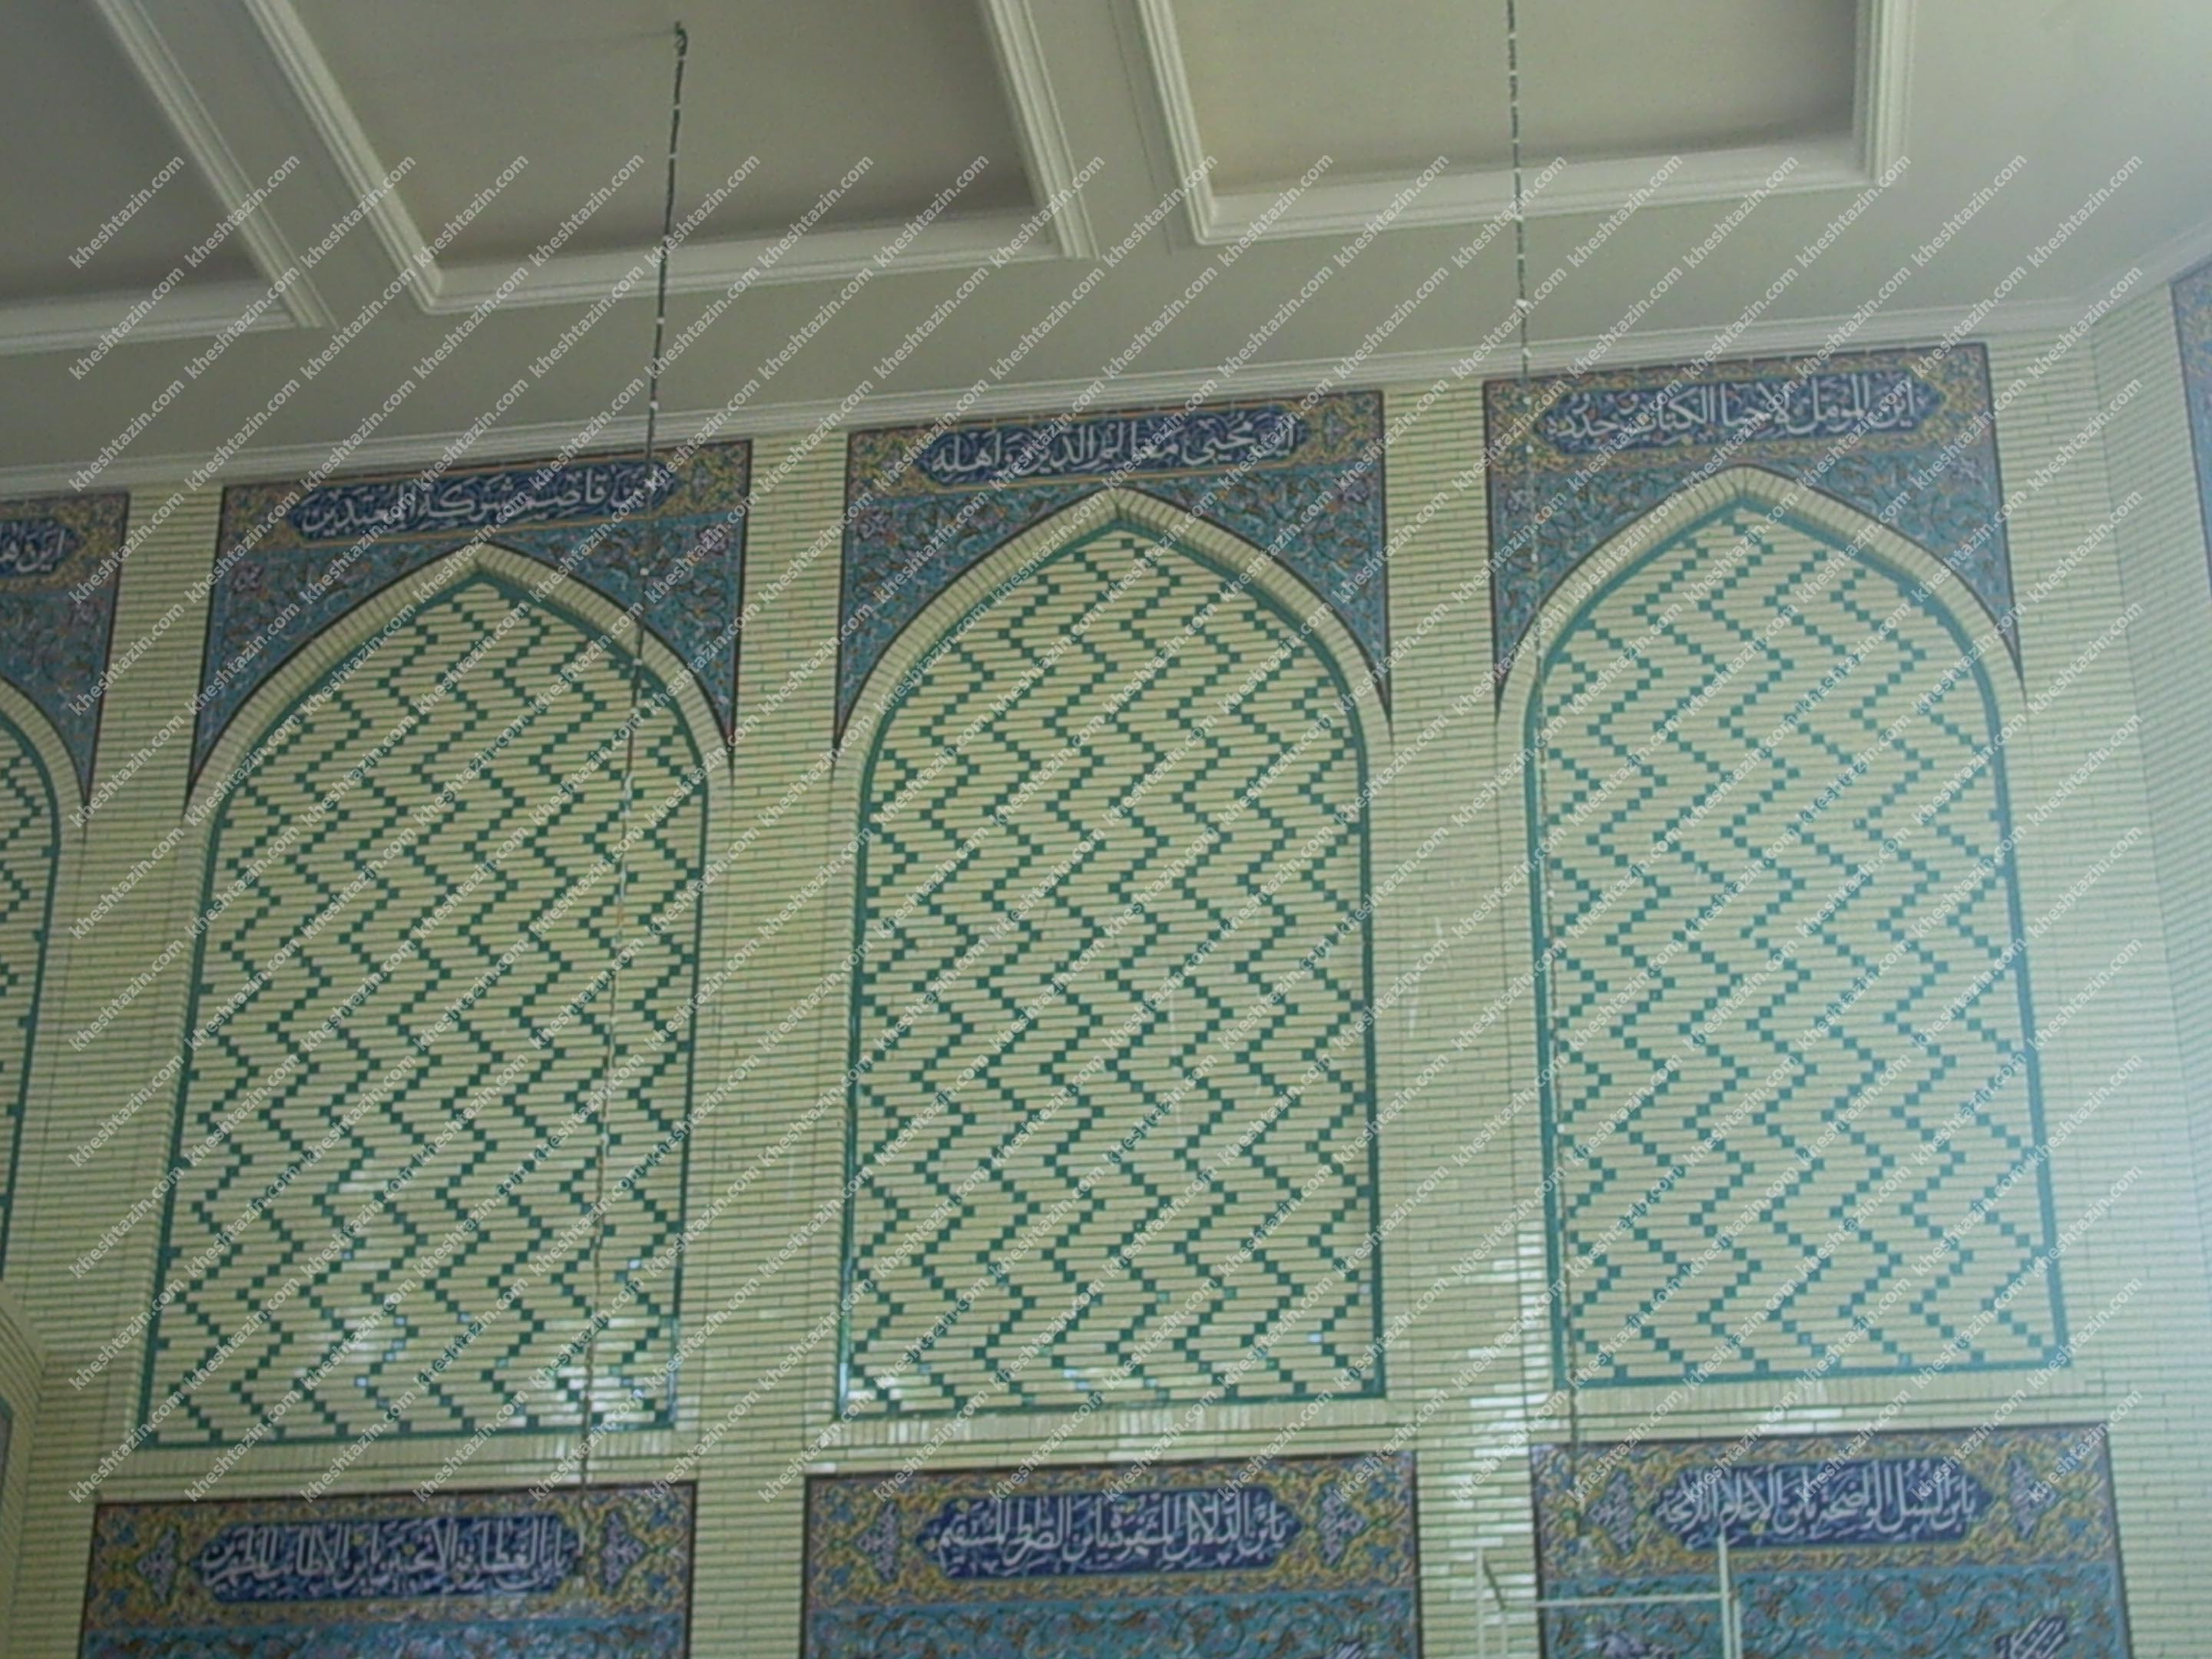  گالری پروژه های مسجدی آجرلعابی